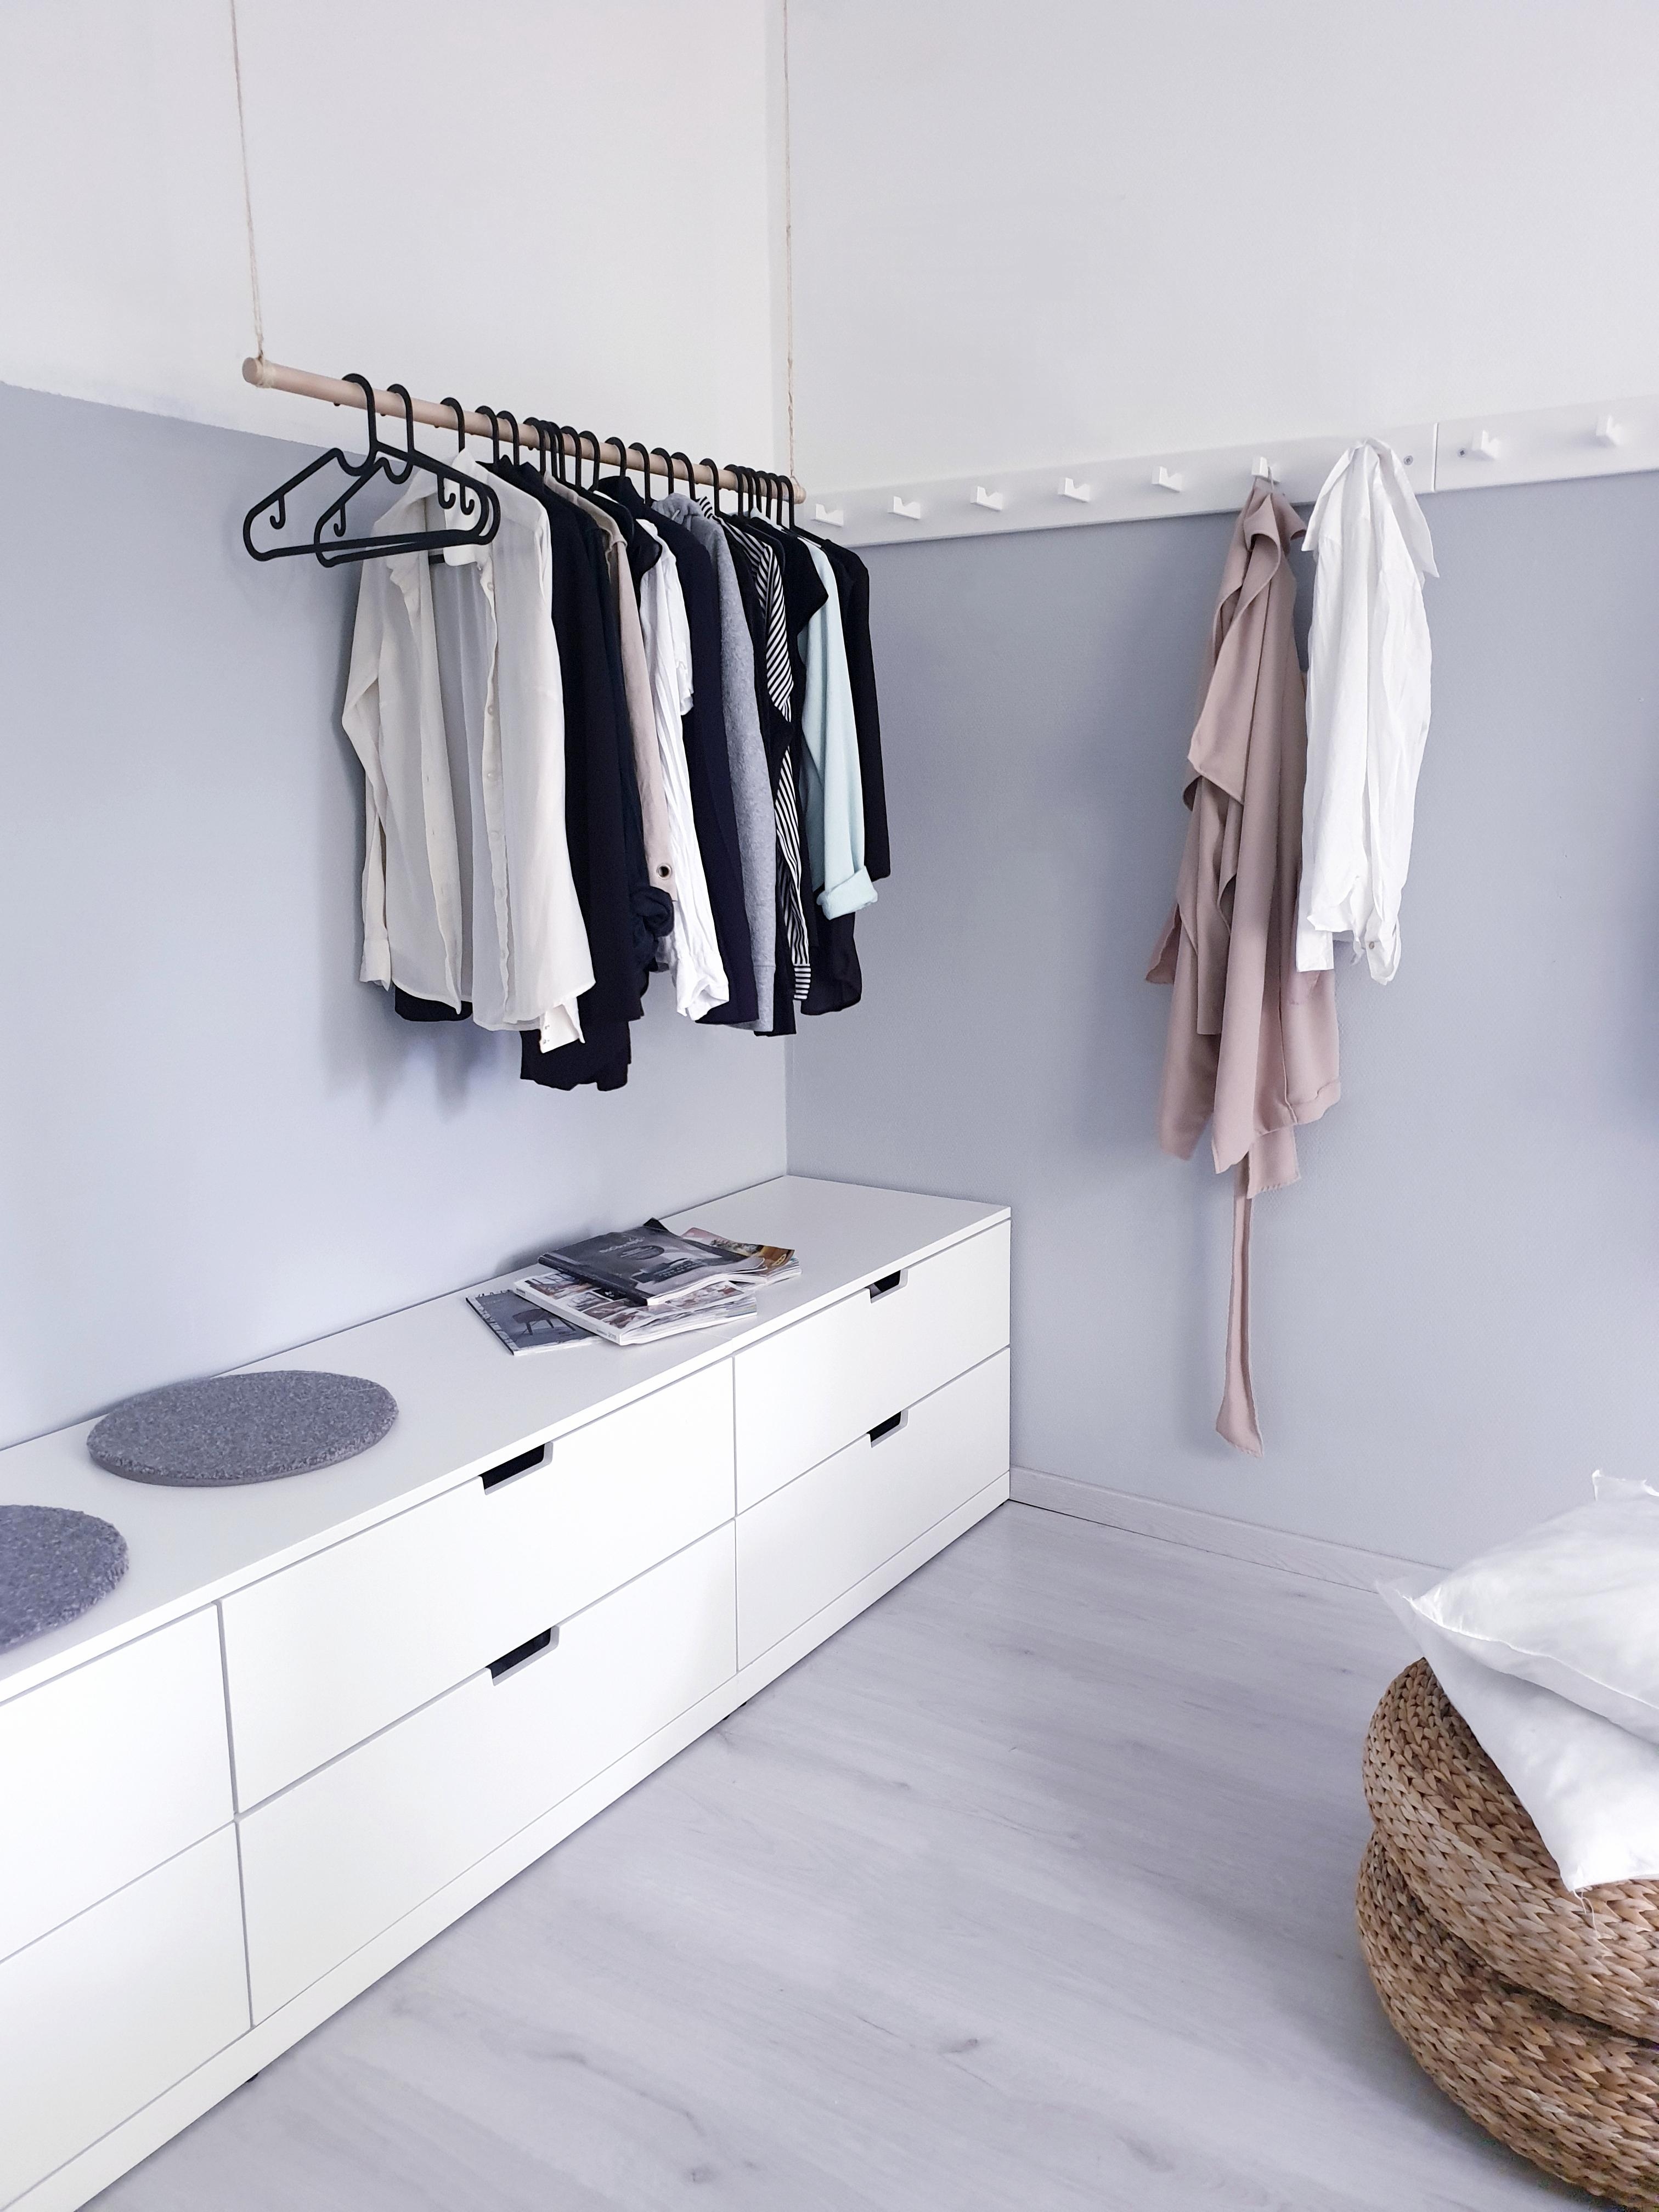 Die offene Variante eines Kleiderschranks 🙃
#kleiderstange #garderobe #kleiderhaken #minimalistisch #kommode 